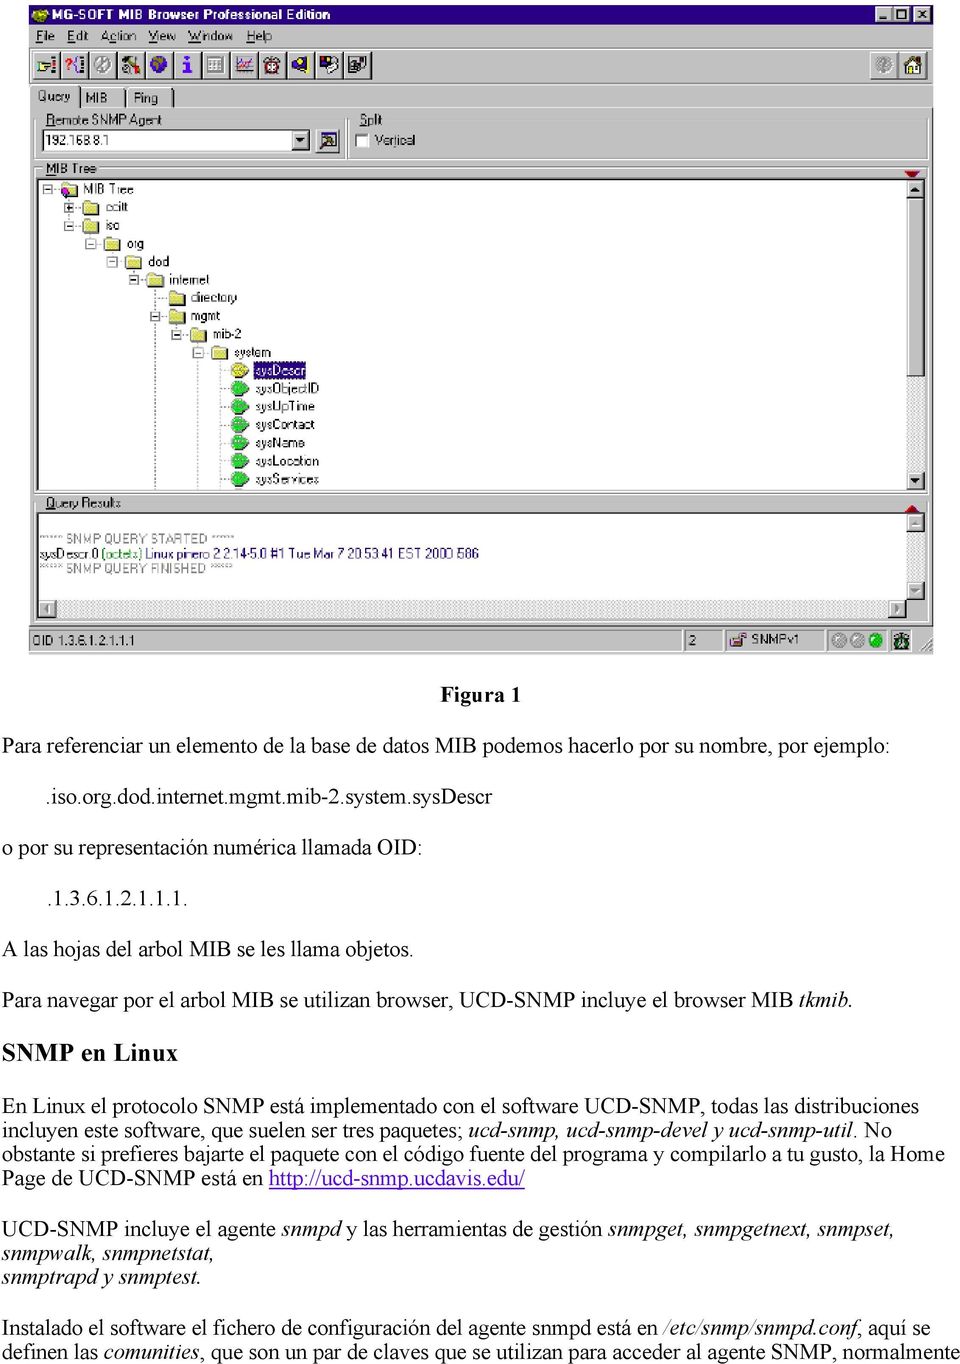 SNMP en Linux En Linux el protocolo SNMP está implementado con el software UCD-SNMP, todas las distribuciones incluyen este software, que suelen ser tres paquetes; ucd-snmp, ucd-snmp-devel y